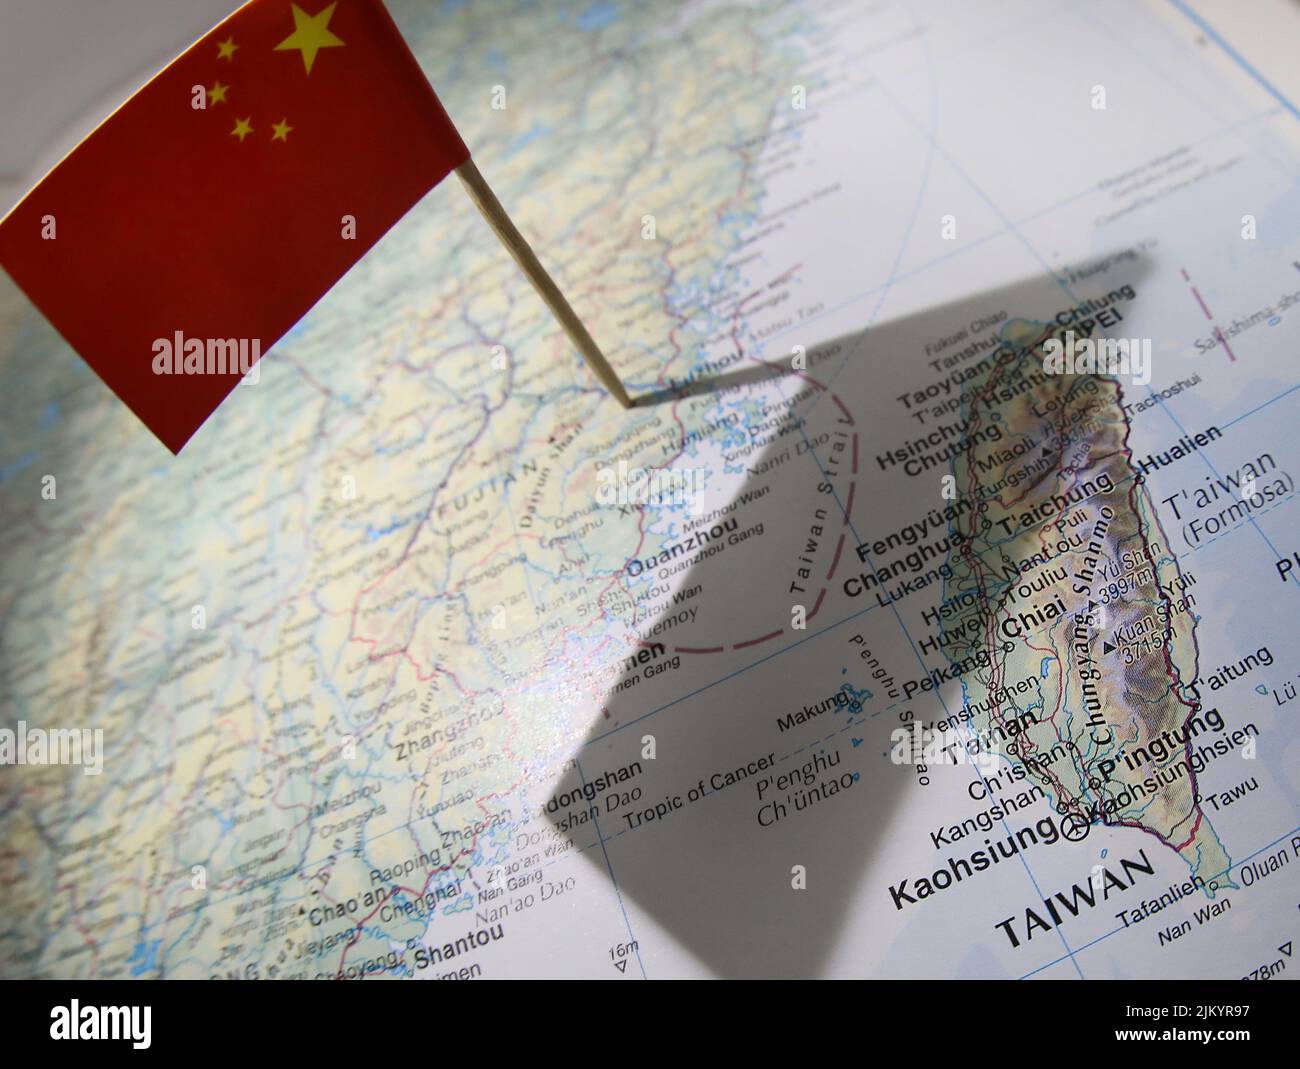 Un graphique de style éditorial montrant le drapeau chinois sur une carte jetant une ombre de son territoire au-dessus de Taiwan et du détroit de Taiwanais contesté. Banque D'Images